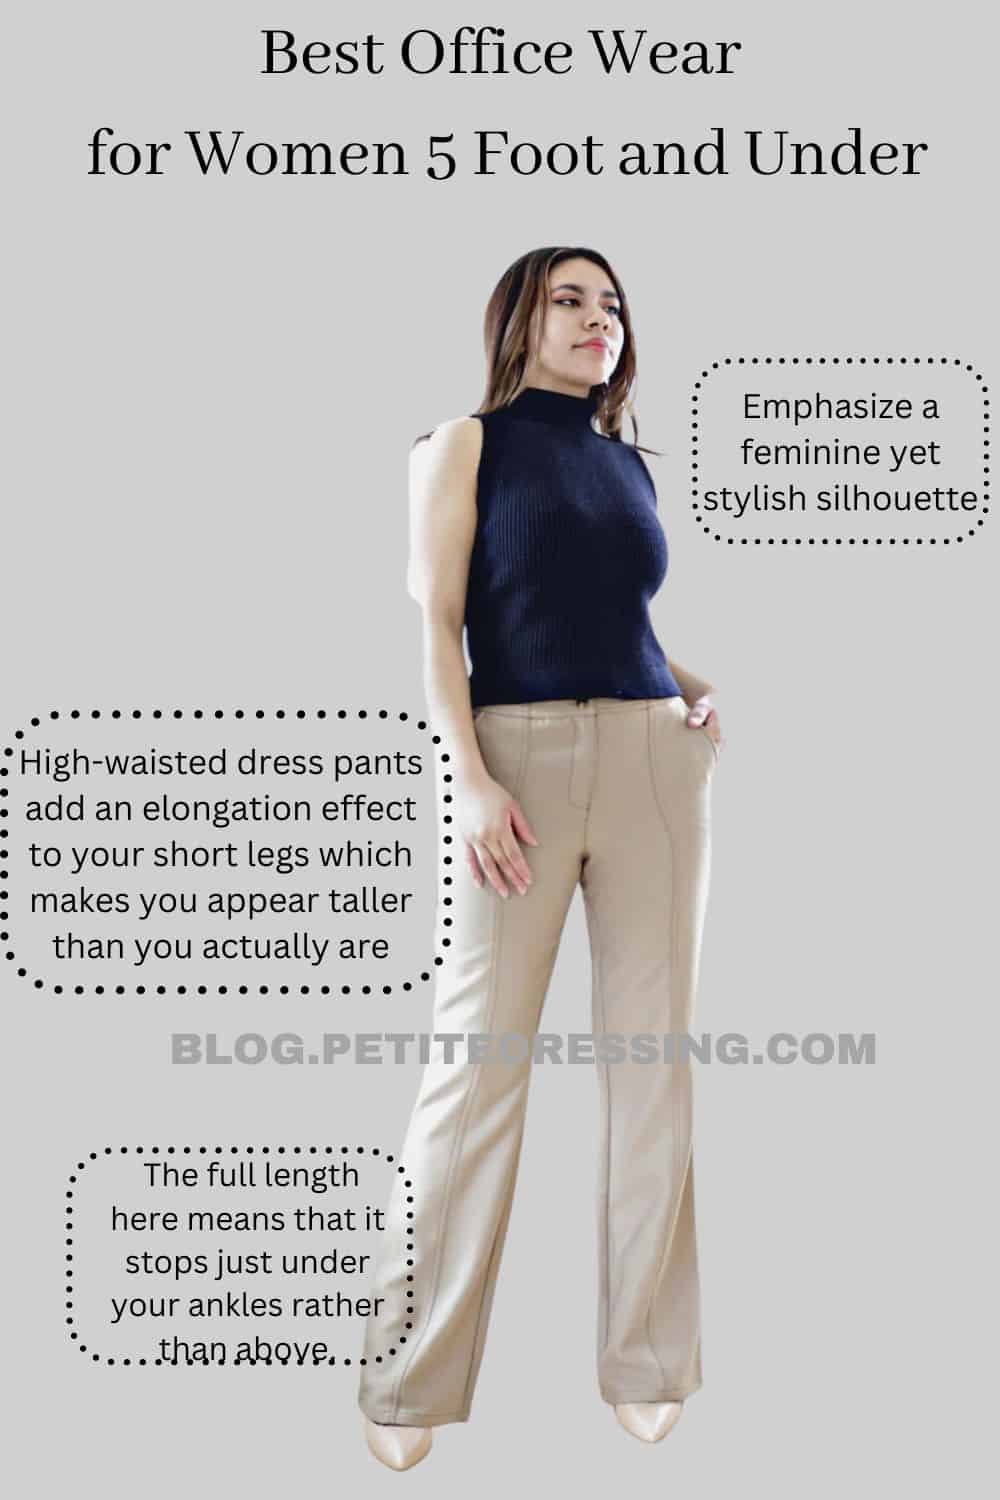 3 Ways to Dress with an Ostomy - wikiHow